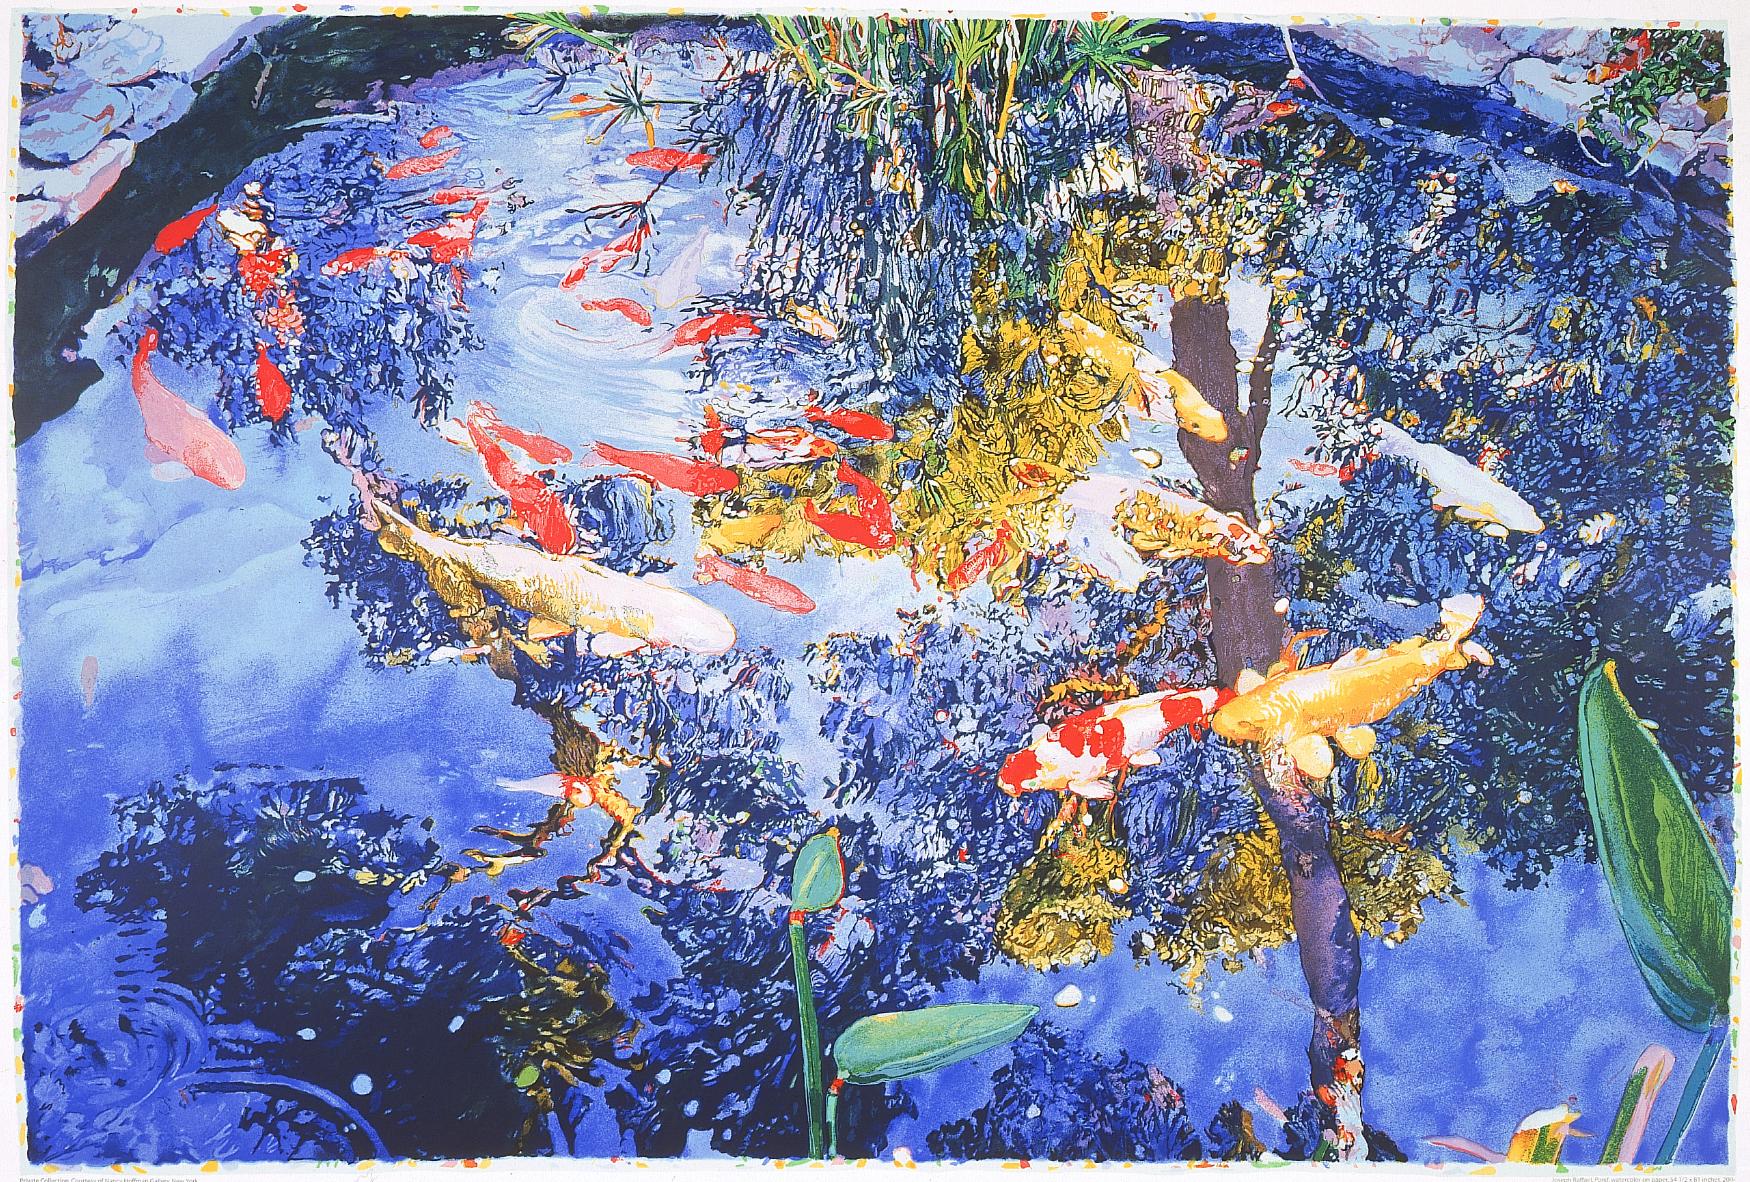 Écran de l'étang, 2004 par Joseph Raffael (rouge et jaune koi dans l'étang)